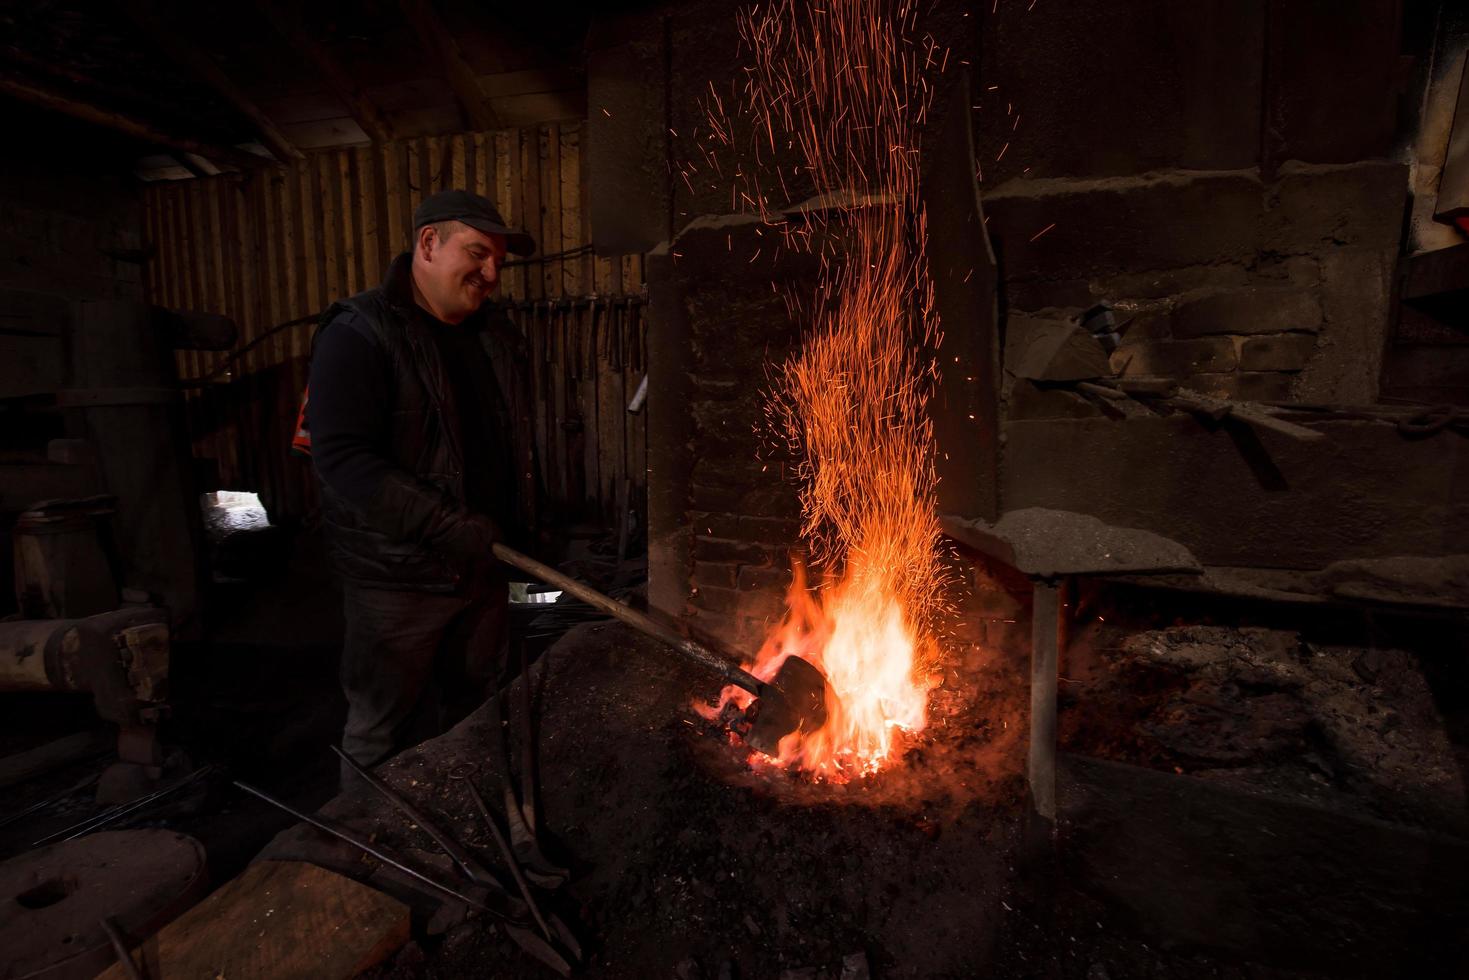 joven herrero tradicional trabajando con fuego abierto foto